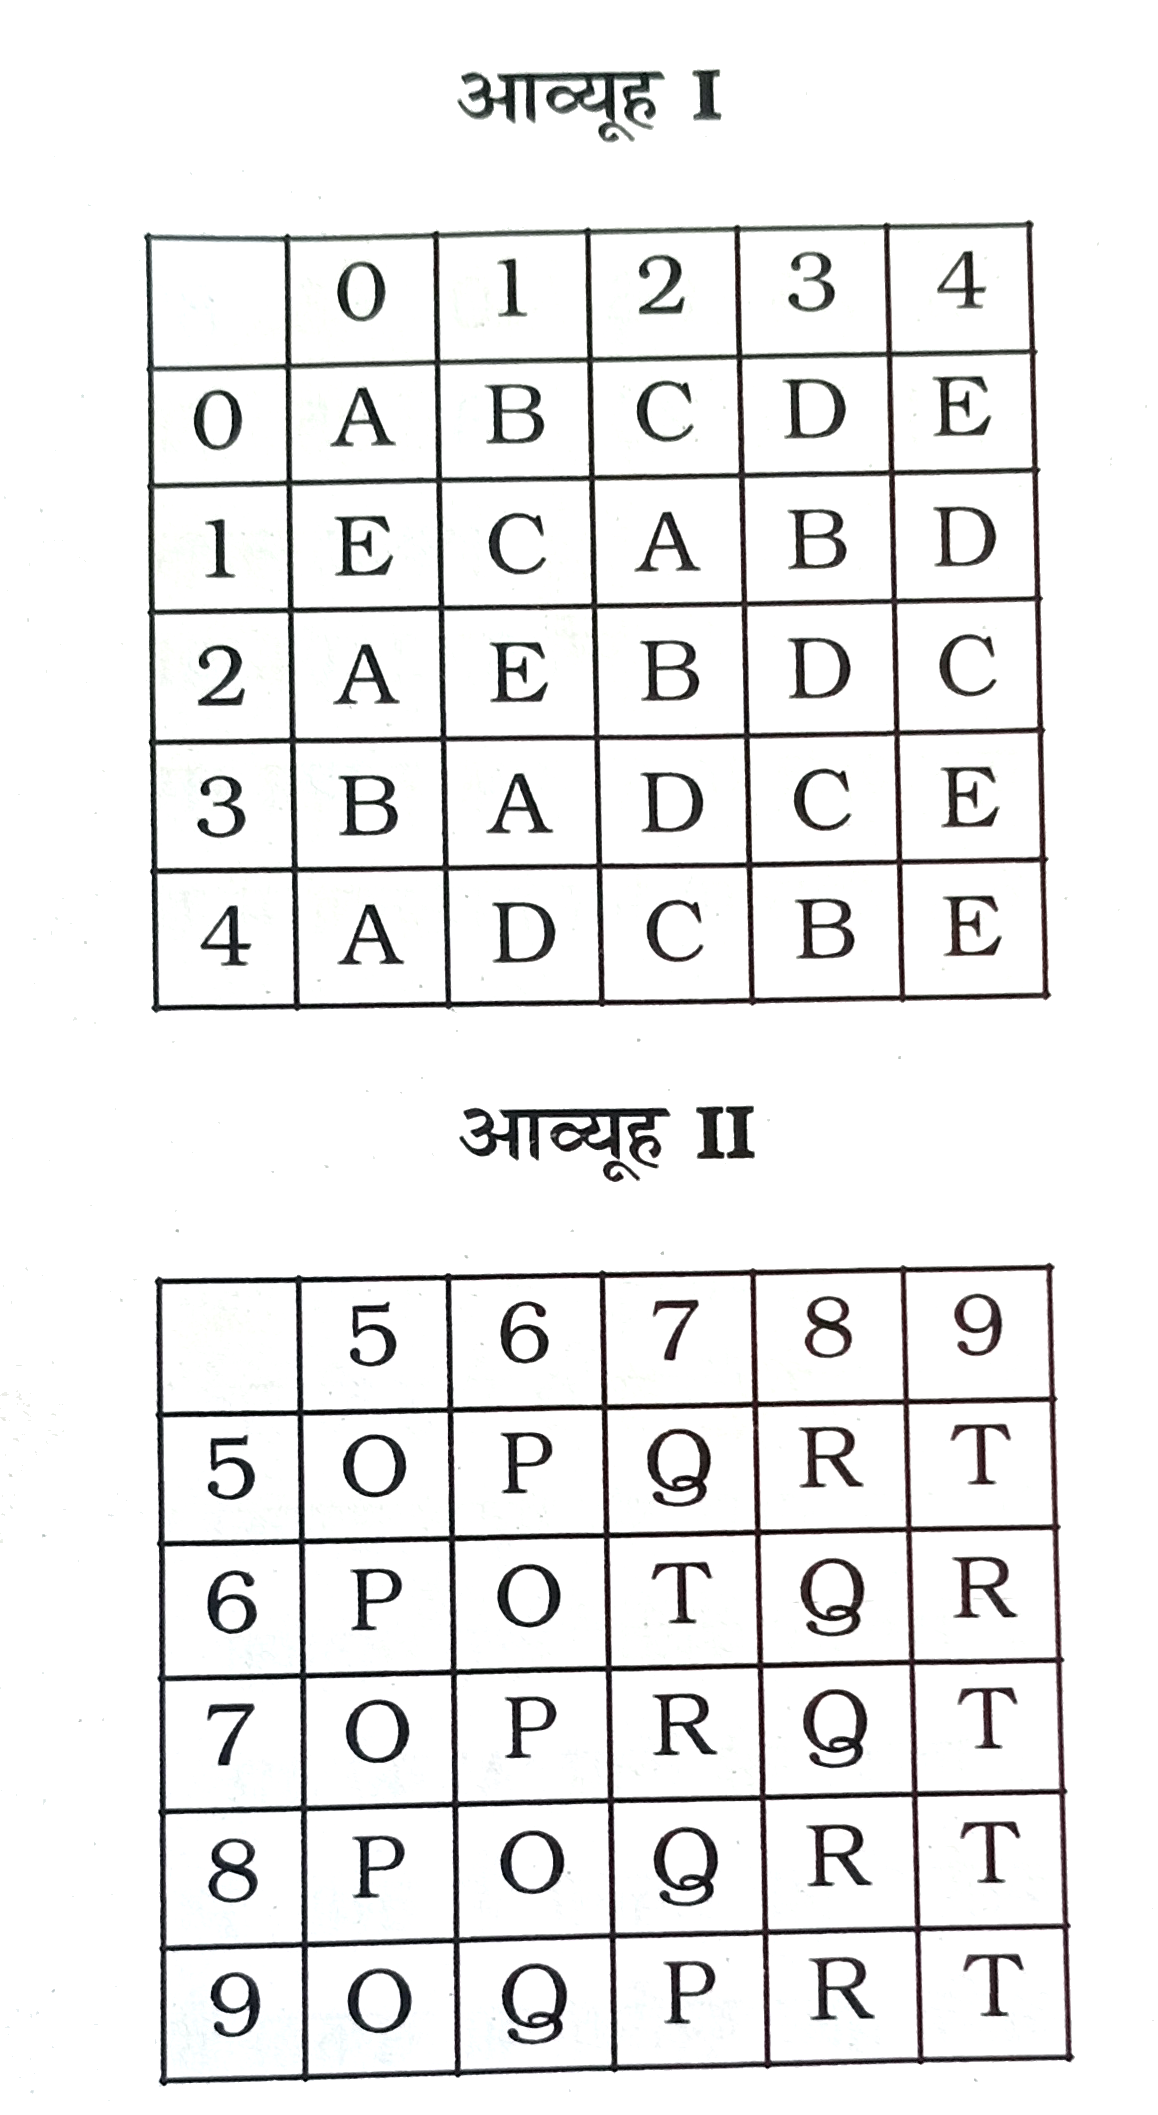 एक शब्द केवल एक संख्या-समूह द्वारा दर्शाया गया है, जैसा कि विकल्पों में से किसी एक में दिया गया है । विकल्पों में दिए गए संख्या-समूह अक्षरों के दो वर्गो द्वारा दर्शाए गए है, जैसा कि नीचे दिए गए दो आव्यूहों में है। आव्यूह -I के स्तम्भ और पंक्ति की संख्या 0 से 4 दी गई है और आव्यूह-II की 5 से 9 । इन आव्यूहों से एक अक्षर को पहले उसकी पंक्ति और बाद में स्तम्भ संख्या द्वारा दर्शाया जा सकता है । उदाहरण के लिए, A को 00,12 आदि द्वारा दर्शाया जा सकता है तथा P को 56,76, आदि द्वारा दर्शाया जा सकता है । इसी तरह से, आपको शब्द PARROT के लिए समूह पहचानना है ।